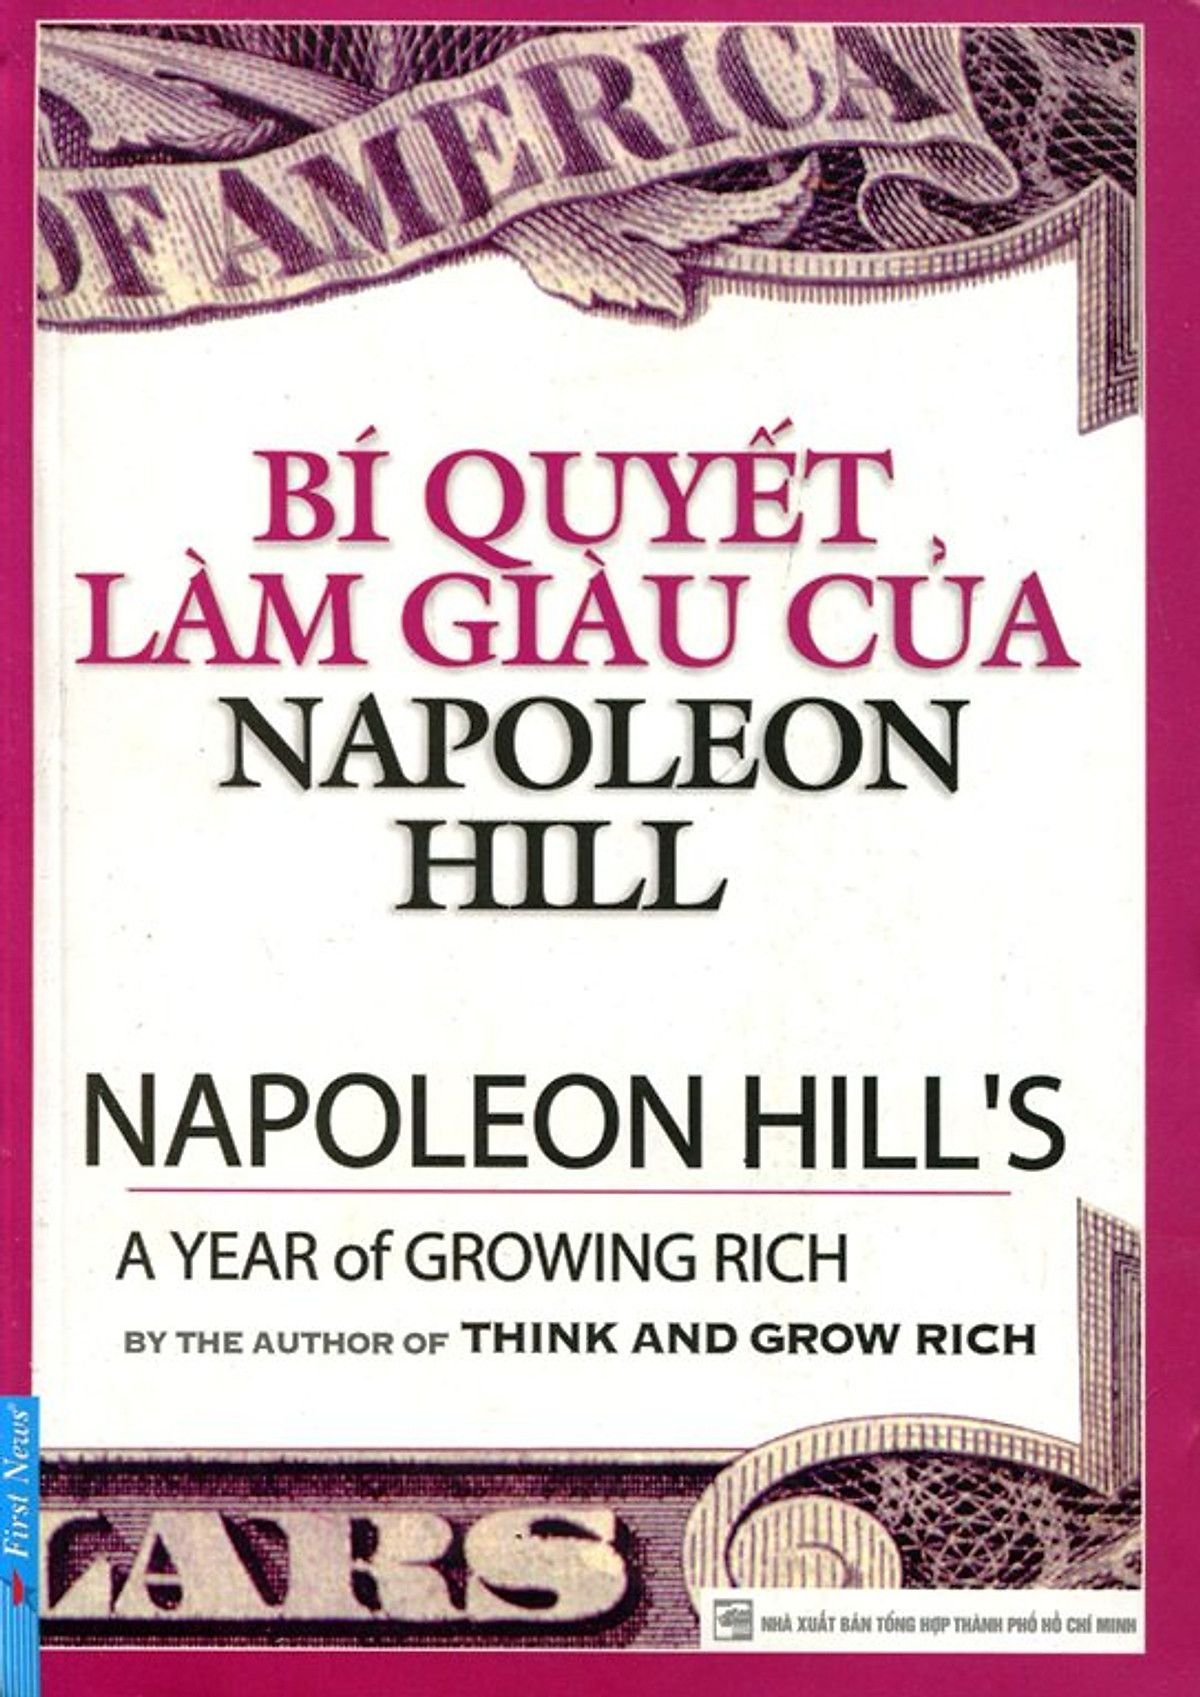 Bí quyết làm giàu - Napoleon Hill